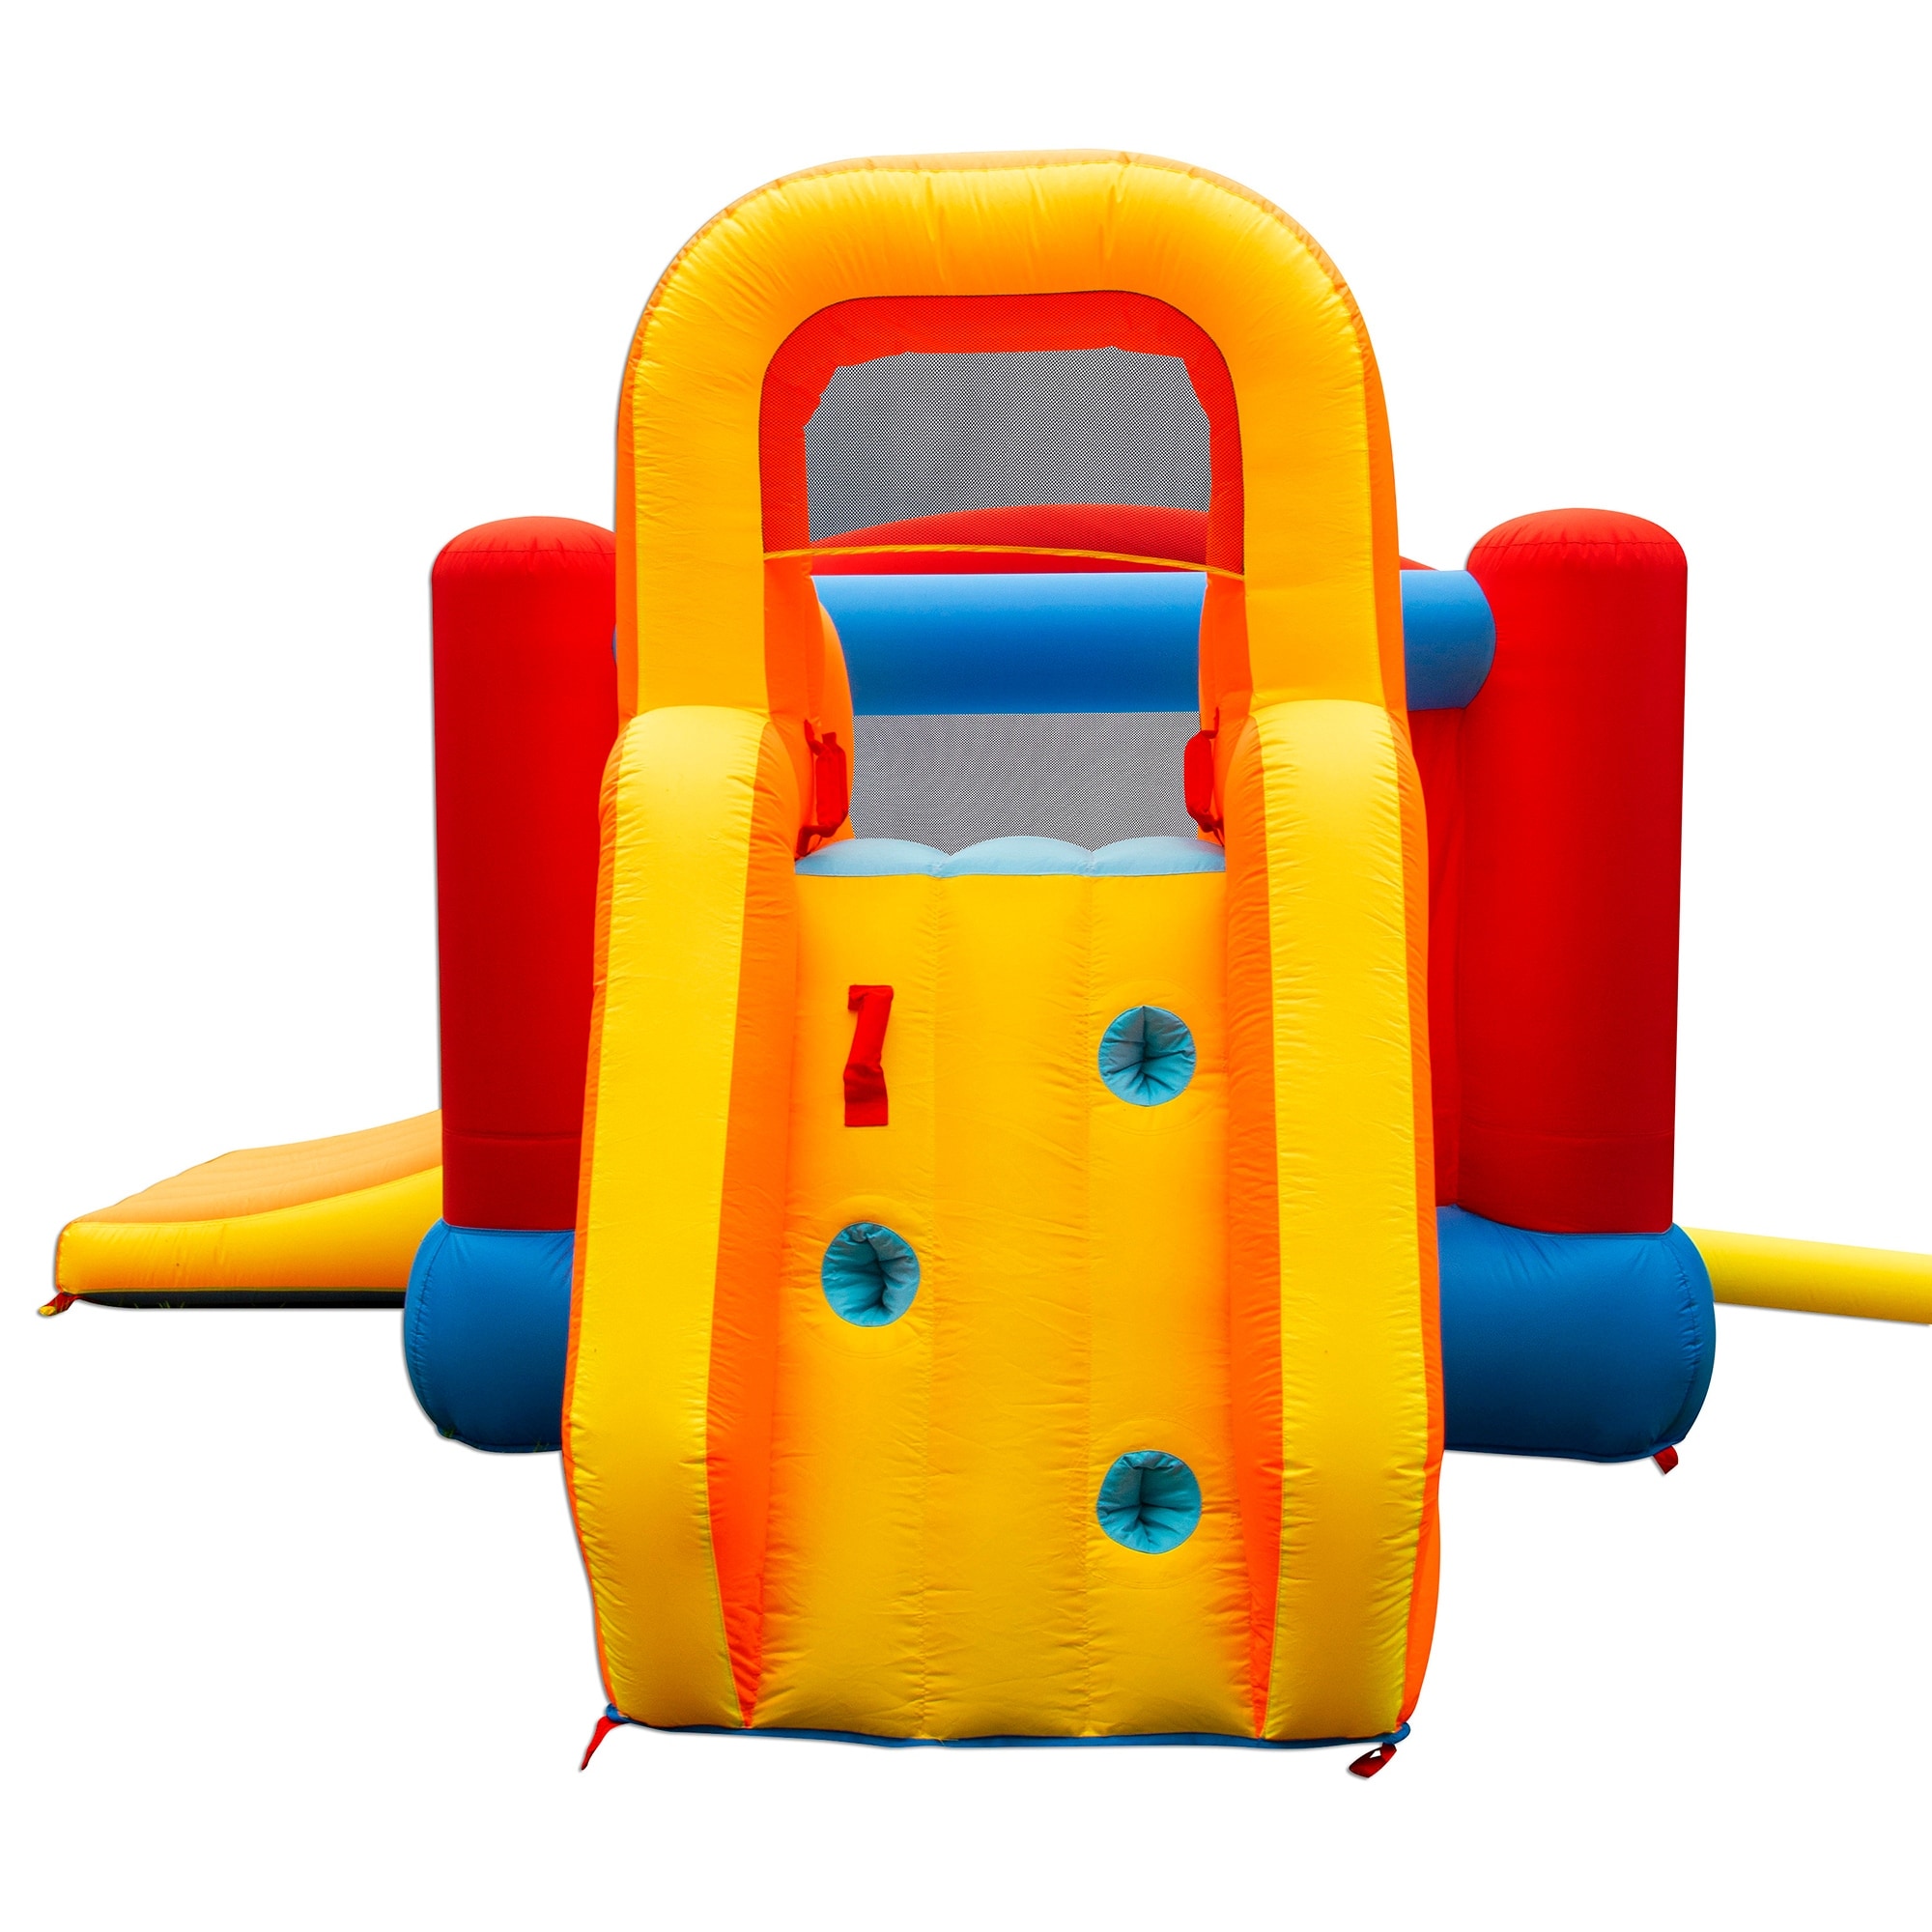 Banzai Double Slide Bouncer Outdoor Inflatable Bounce House & Climbing Wall - 44